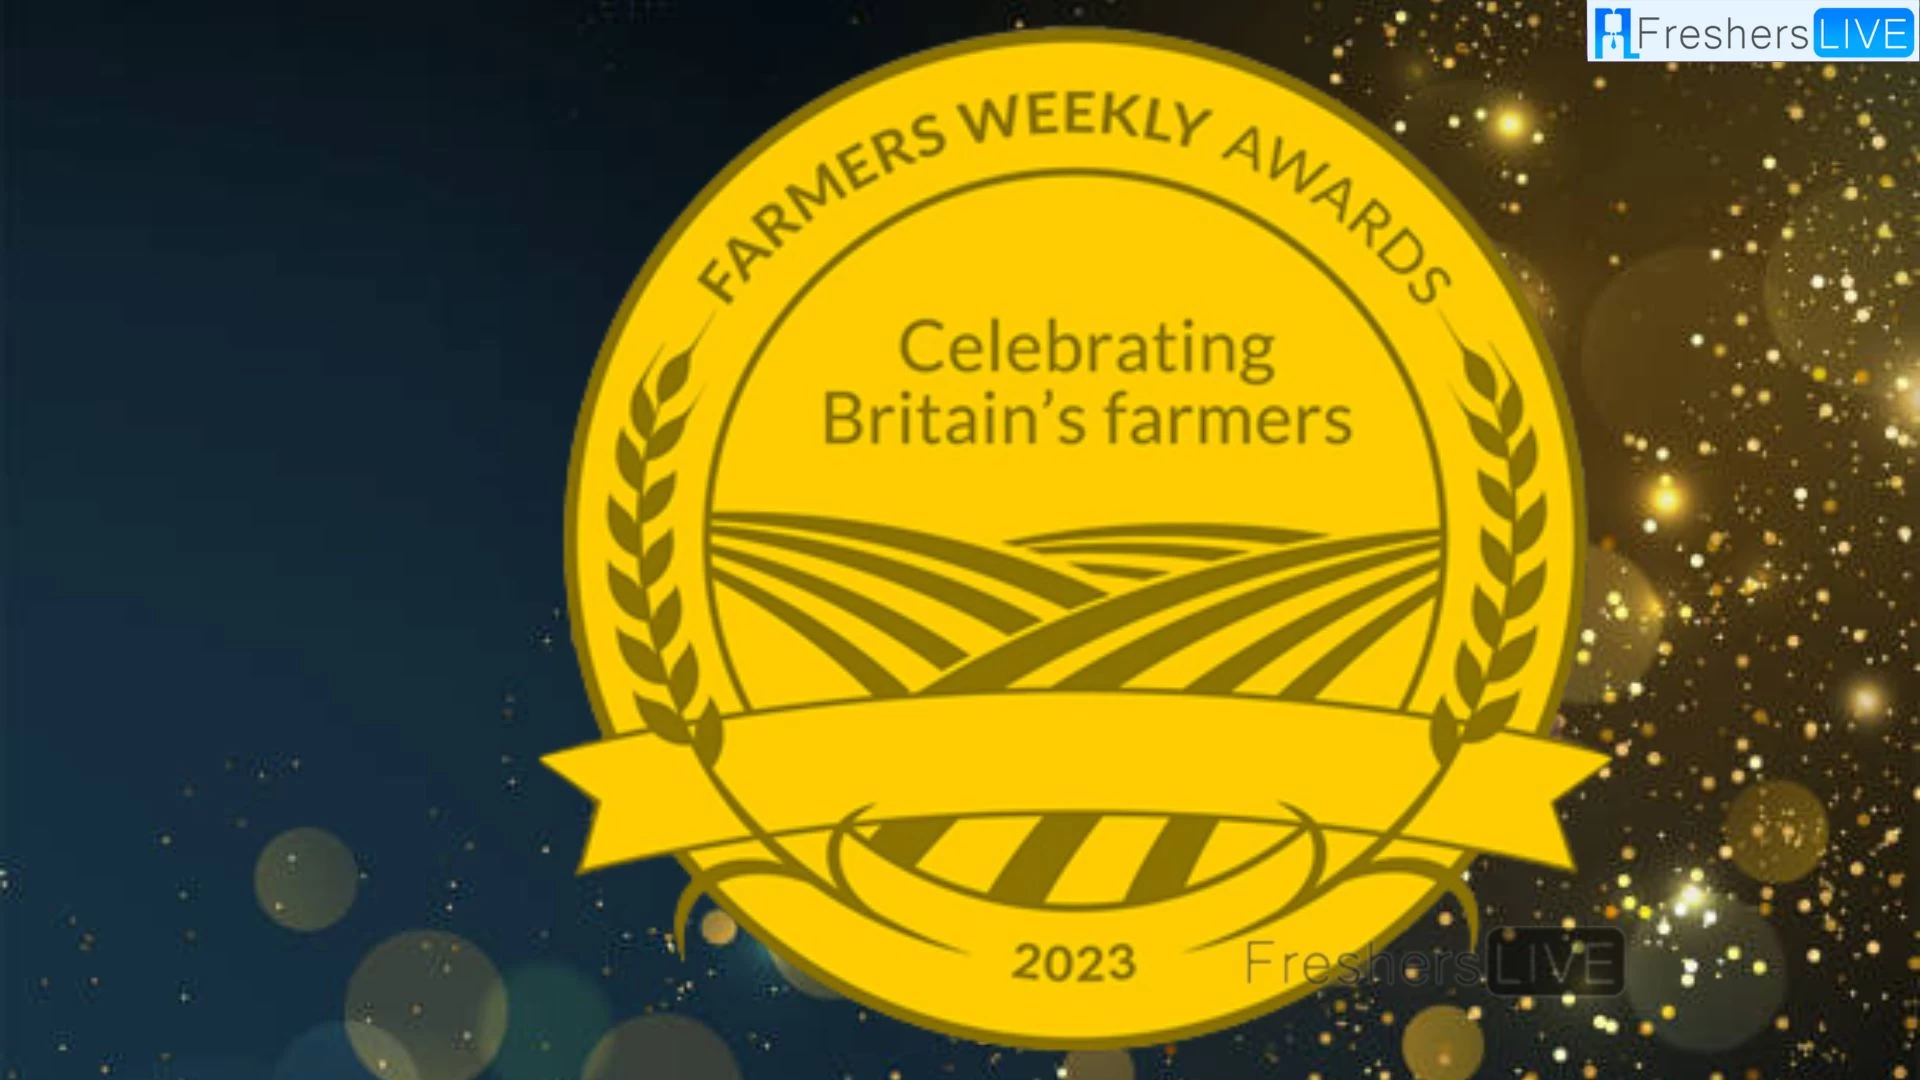 Farmers Weekly Awards 2023, ganadores de los Farmers Weekly Awards